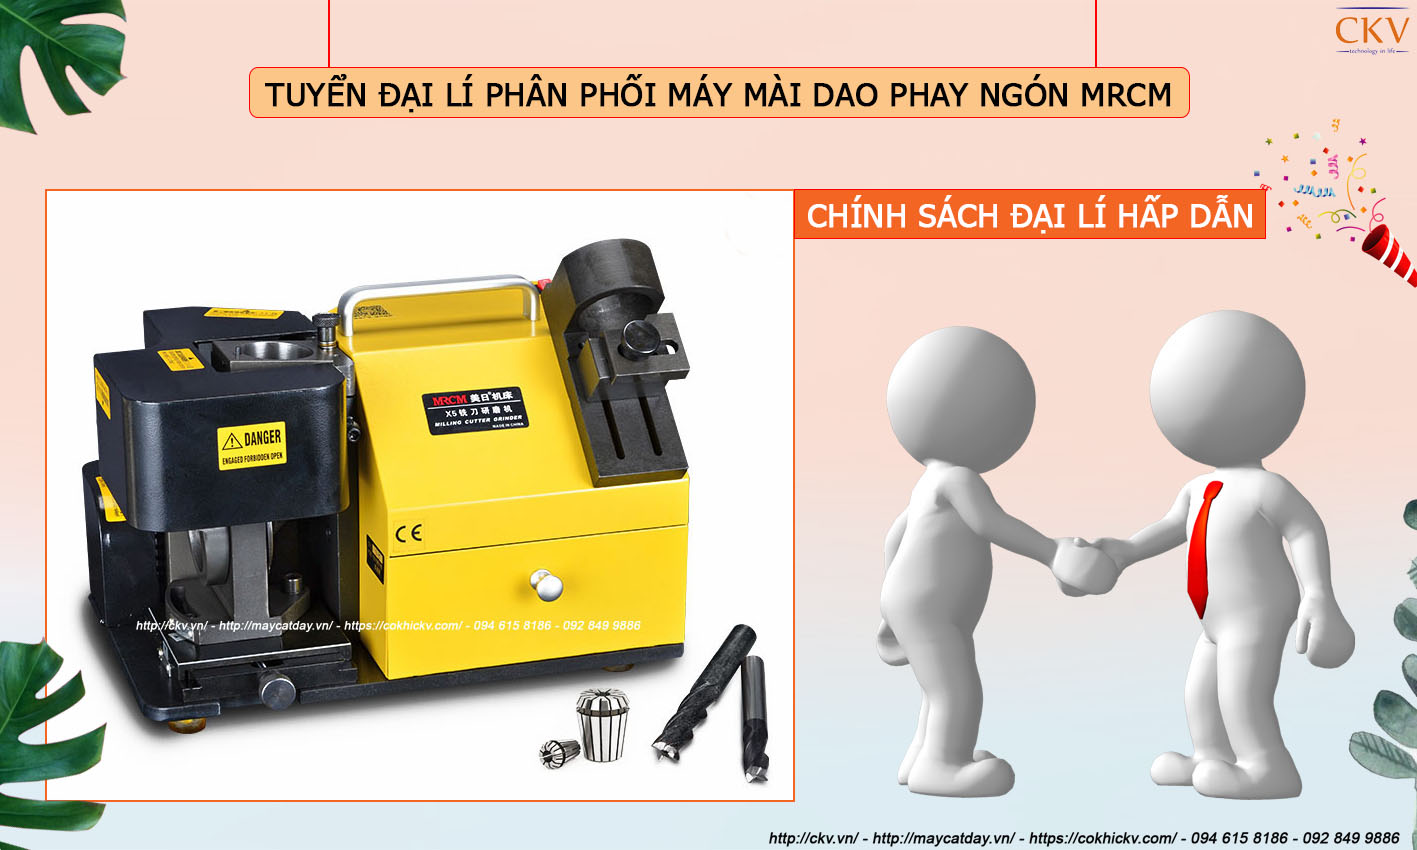 CKV Việt Nam tuyển đại lí phân phối máy mài dao phay ngón MRCM giá rẻ chính hãng tại Hải Phòng